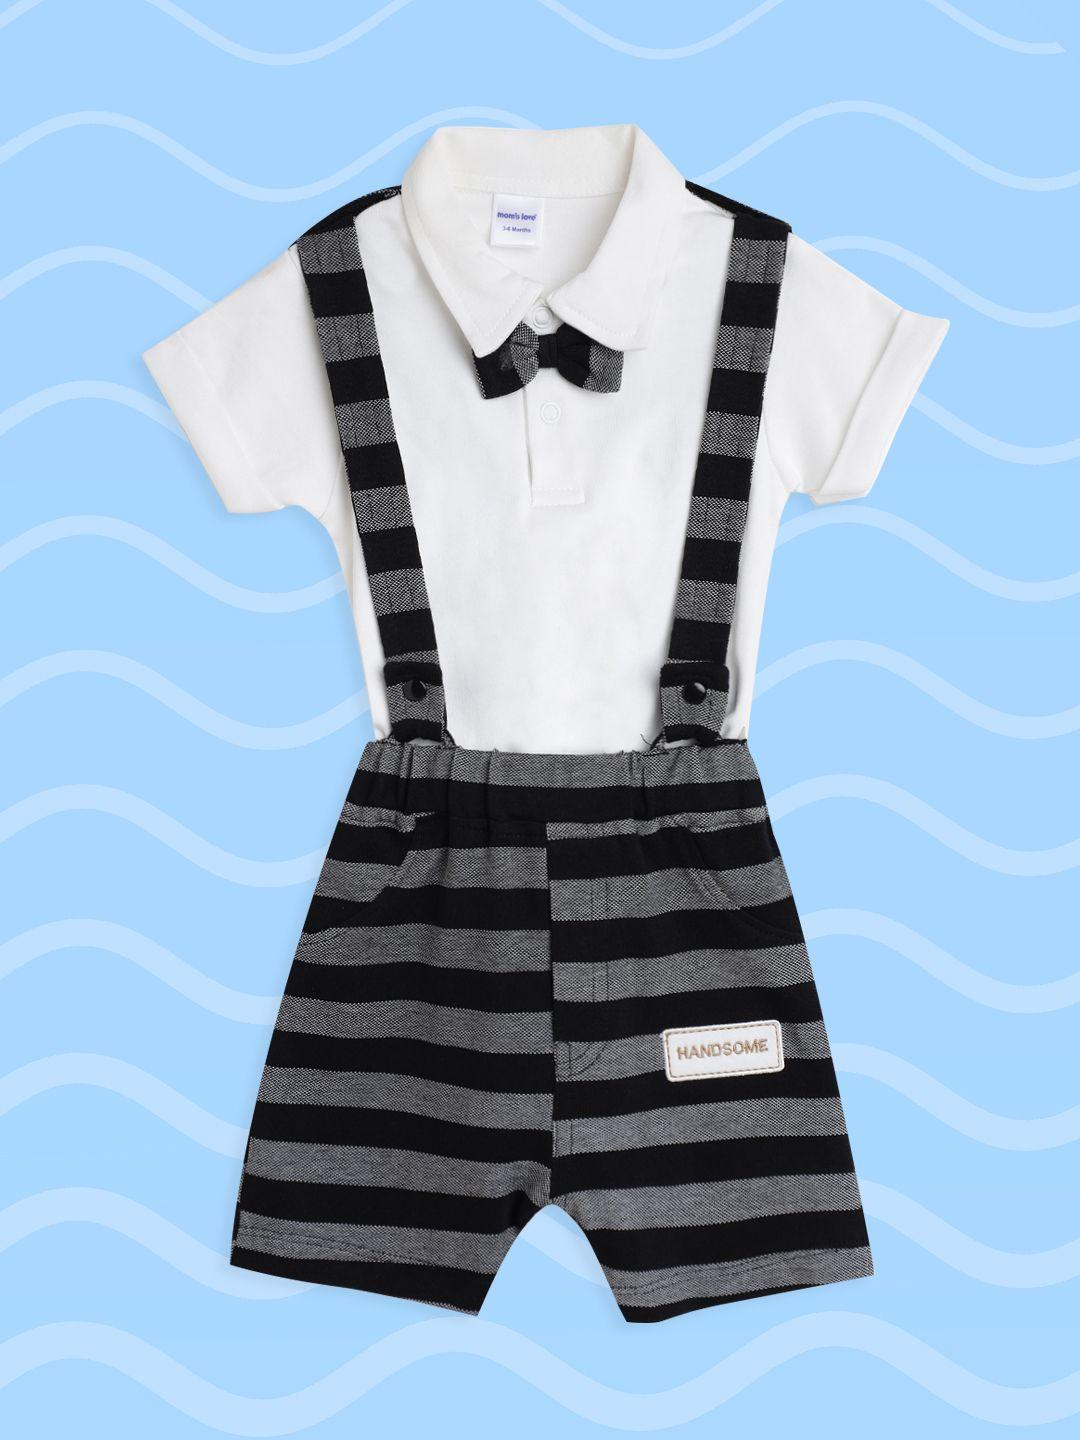 moms love infant boys white & black striped bow-tie applique cotton clothing set